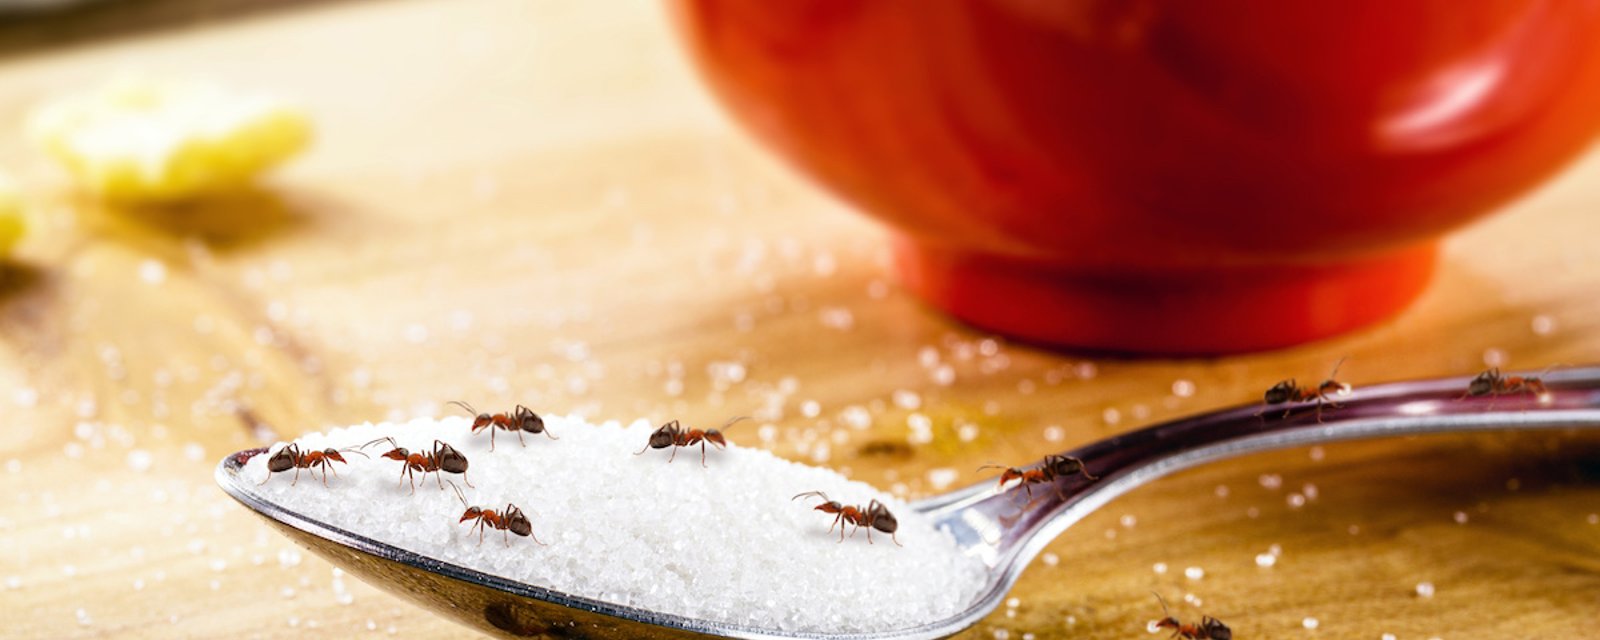 6 façons naturelle pour empêcher les fourmis de vous envahir